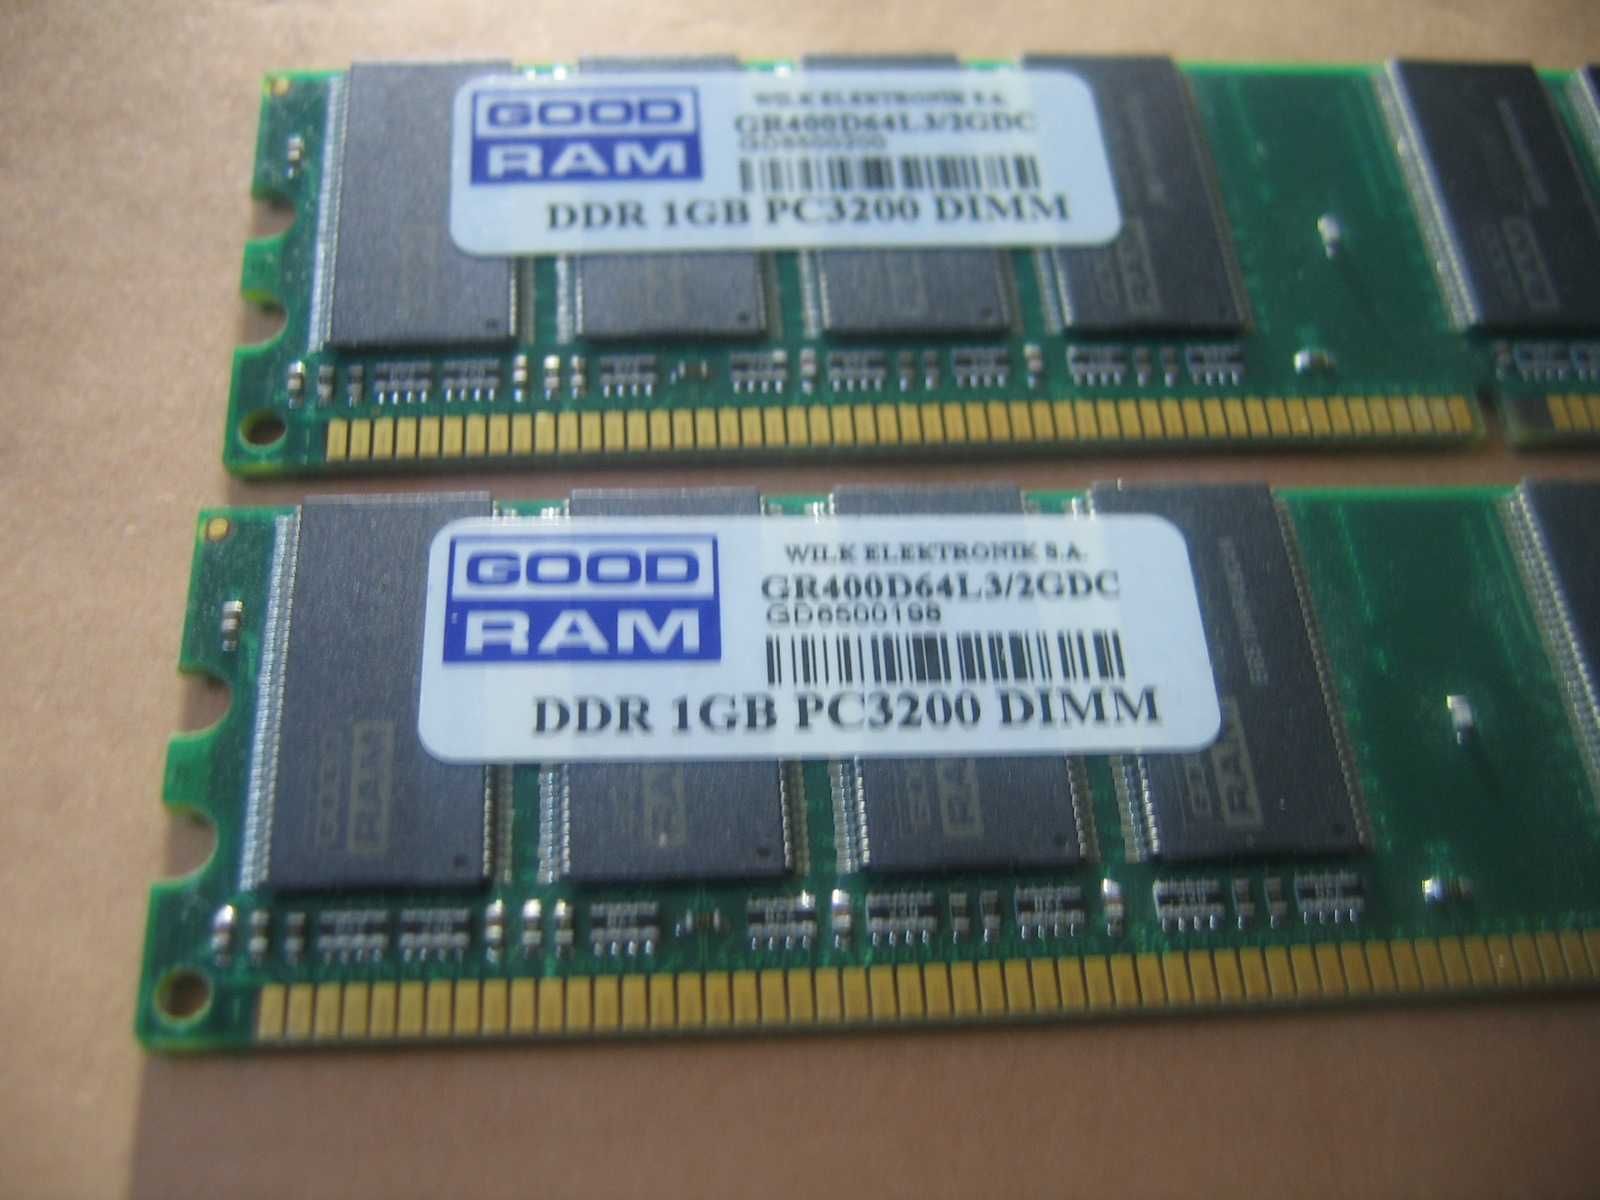 Pamięć Ddr 2Gb GOODRAM  PC3200 - GR400D64L3/2GDC [REZERWACJA]